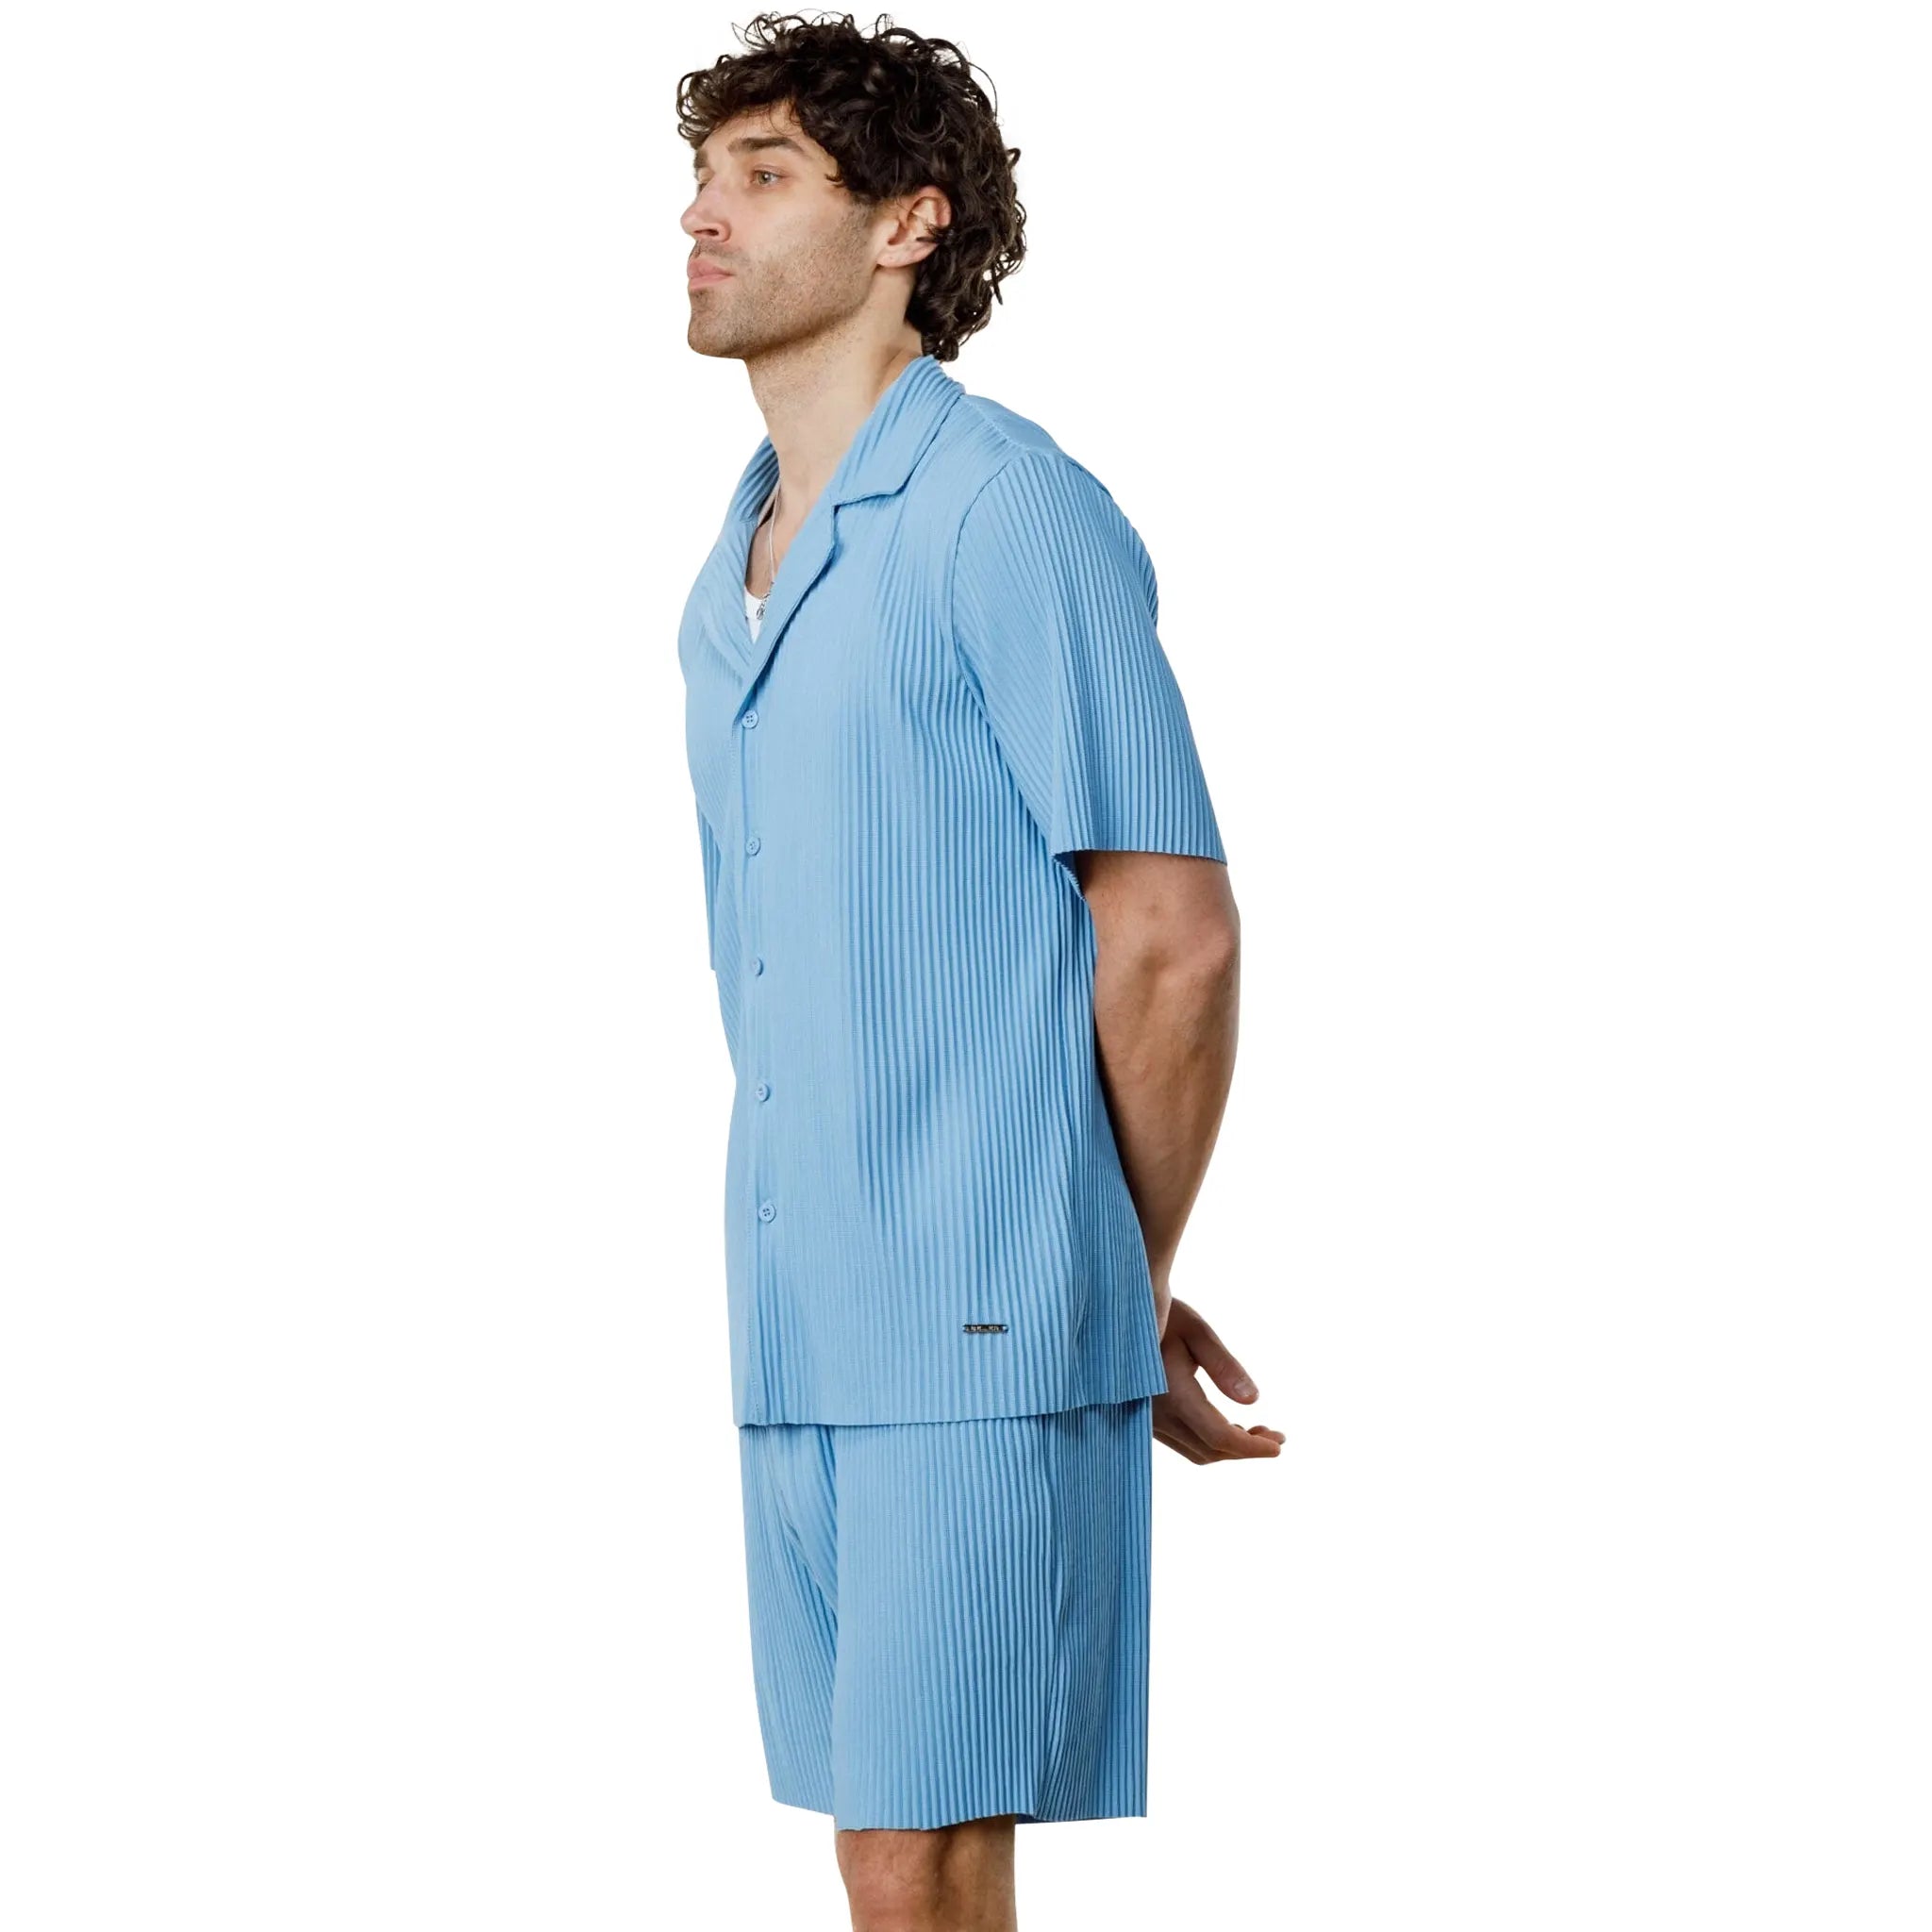 Model Side view of Belier Pleated Short Sleeve Light Blue Resort Shirt BM-073